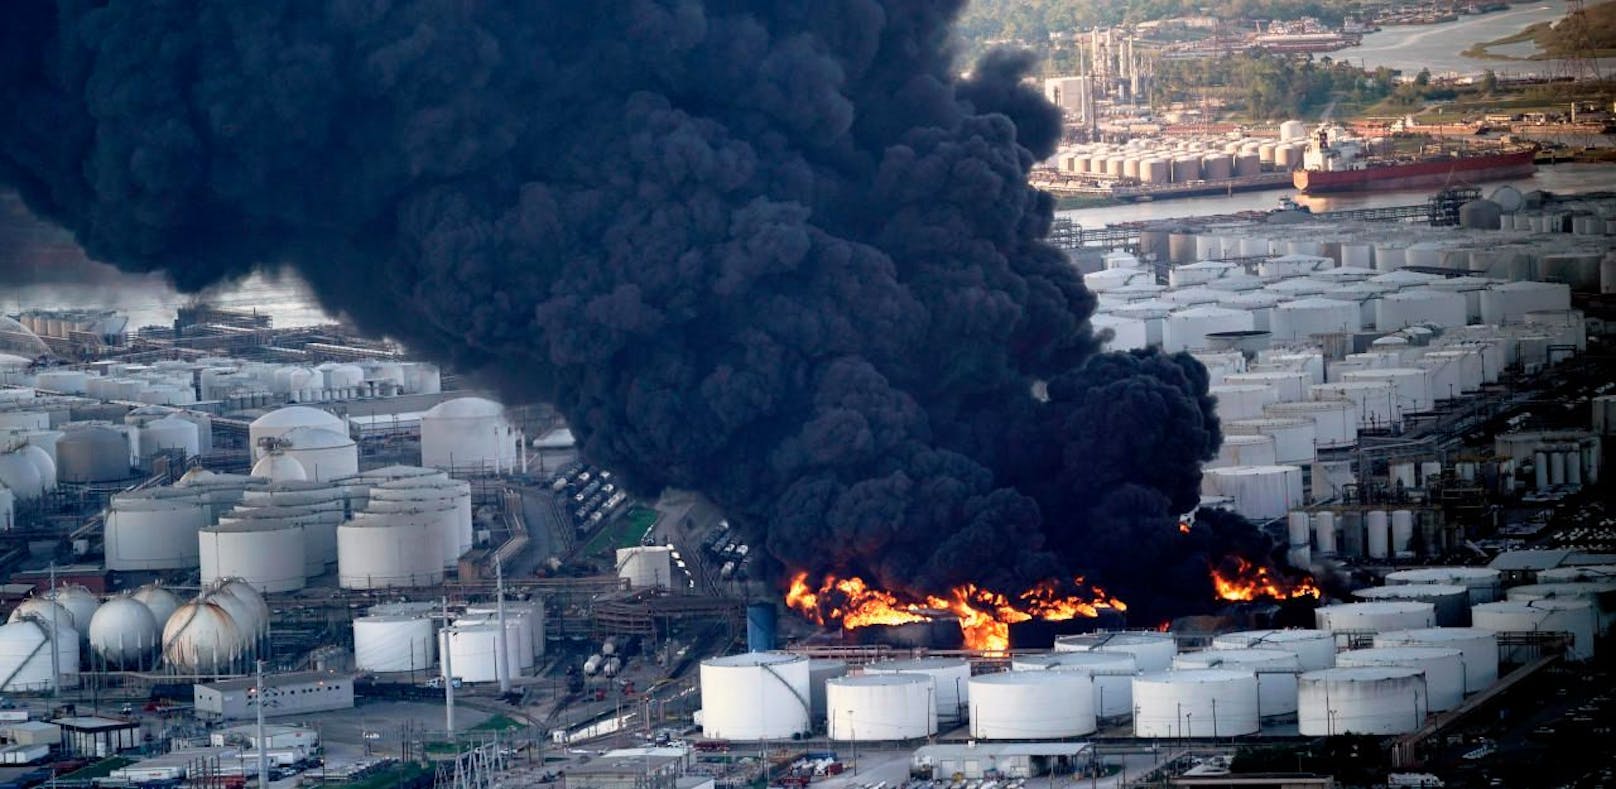 Flammen verschlingen Tanks in Chemiewerk